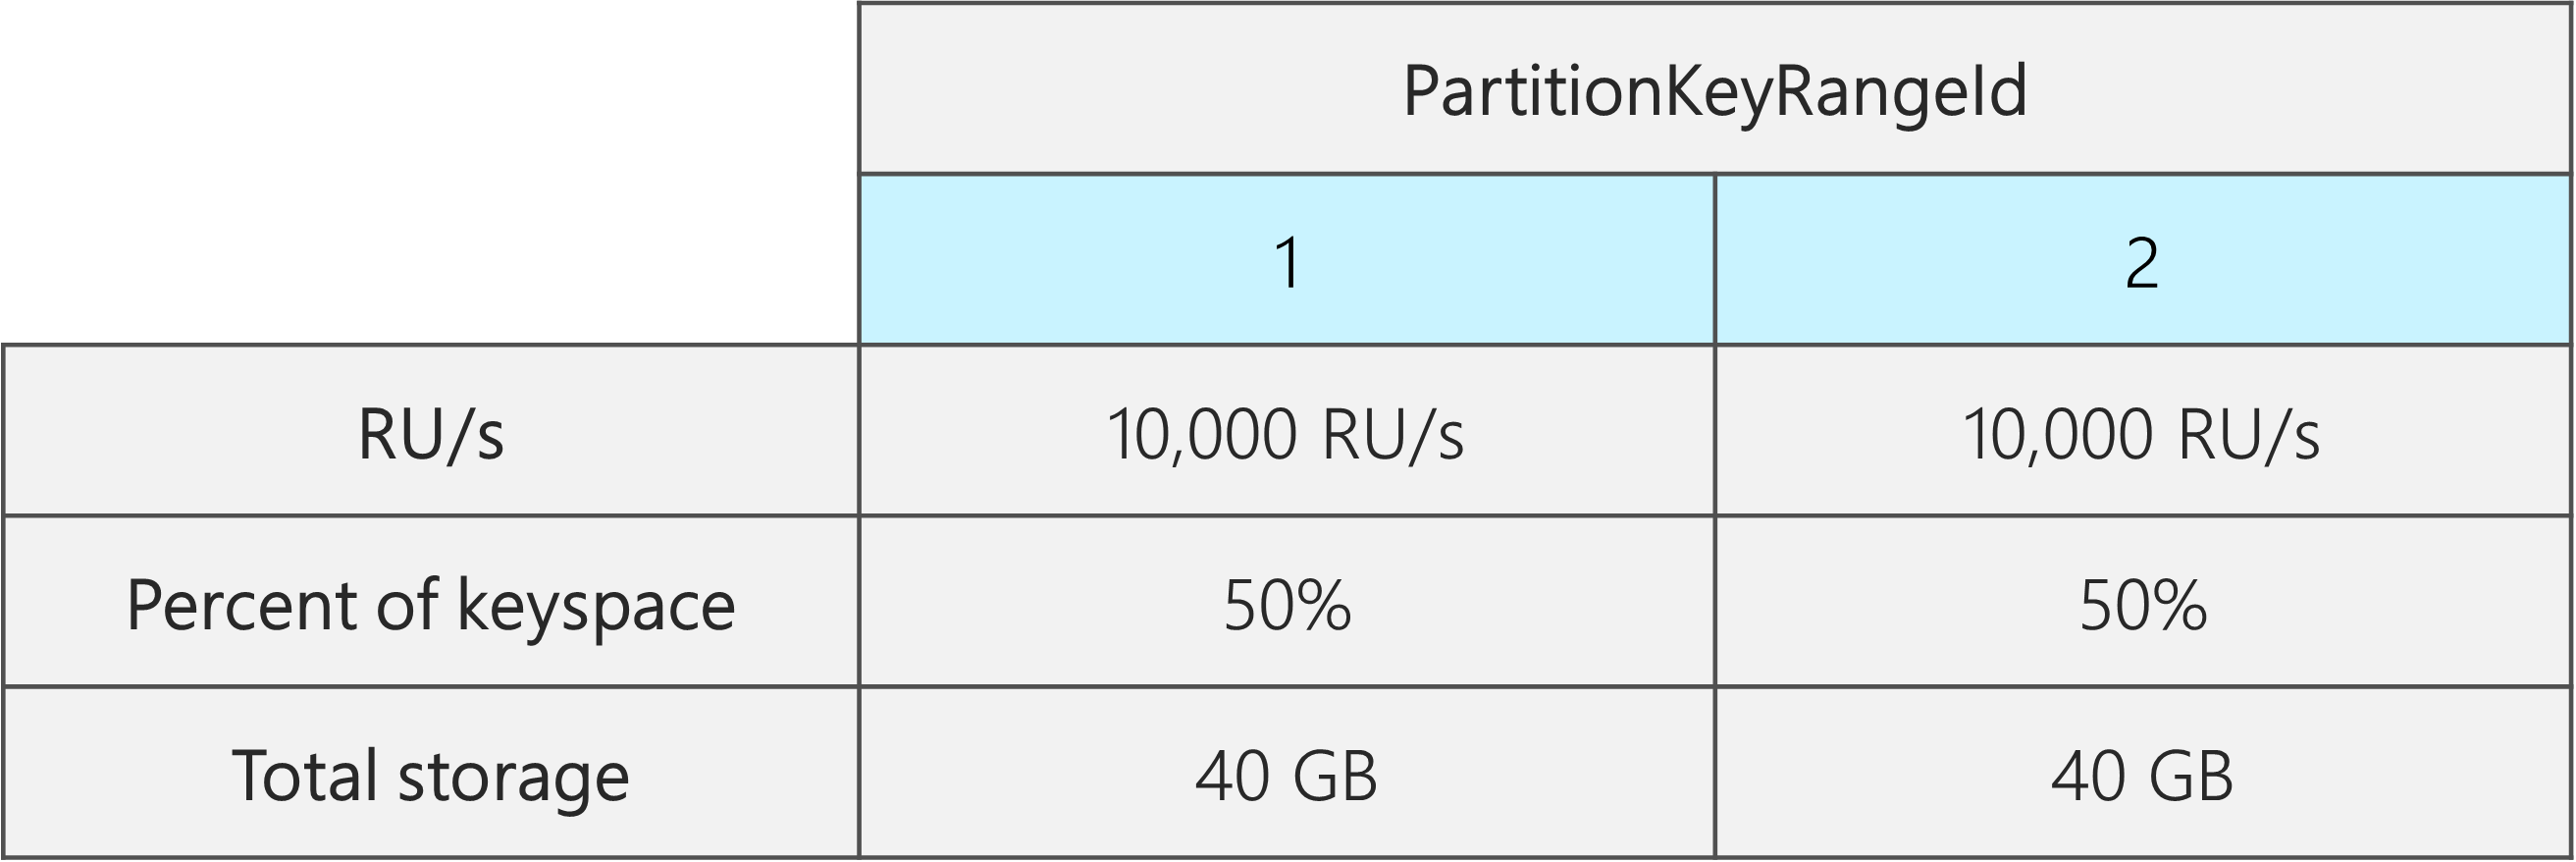 Два идентификатора PartitionKeyRangeId, каждый с 10 000 ЕЗ, 40 ГБ и 50 % от общего пространства ключей